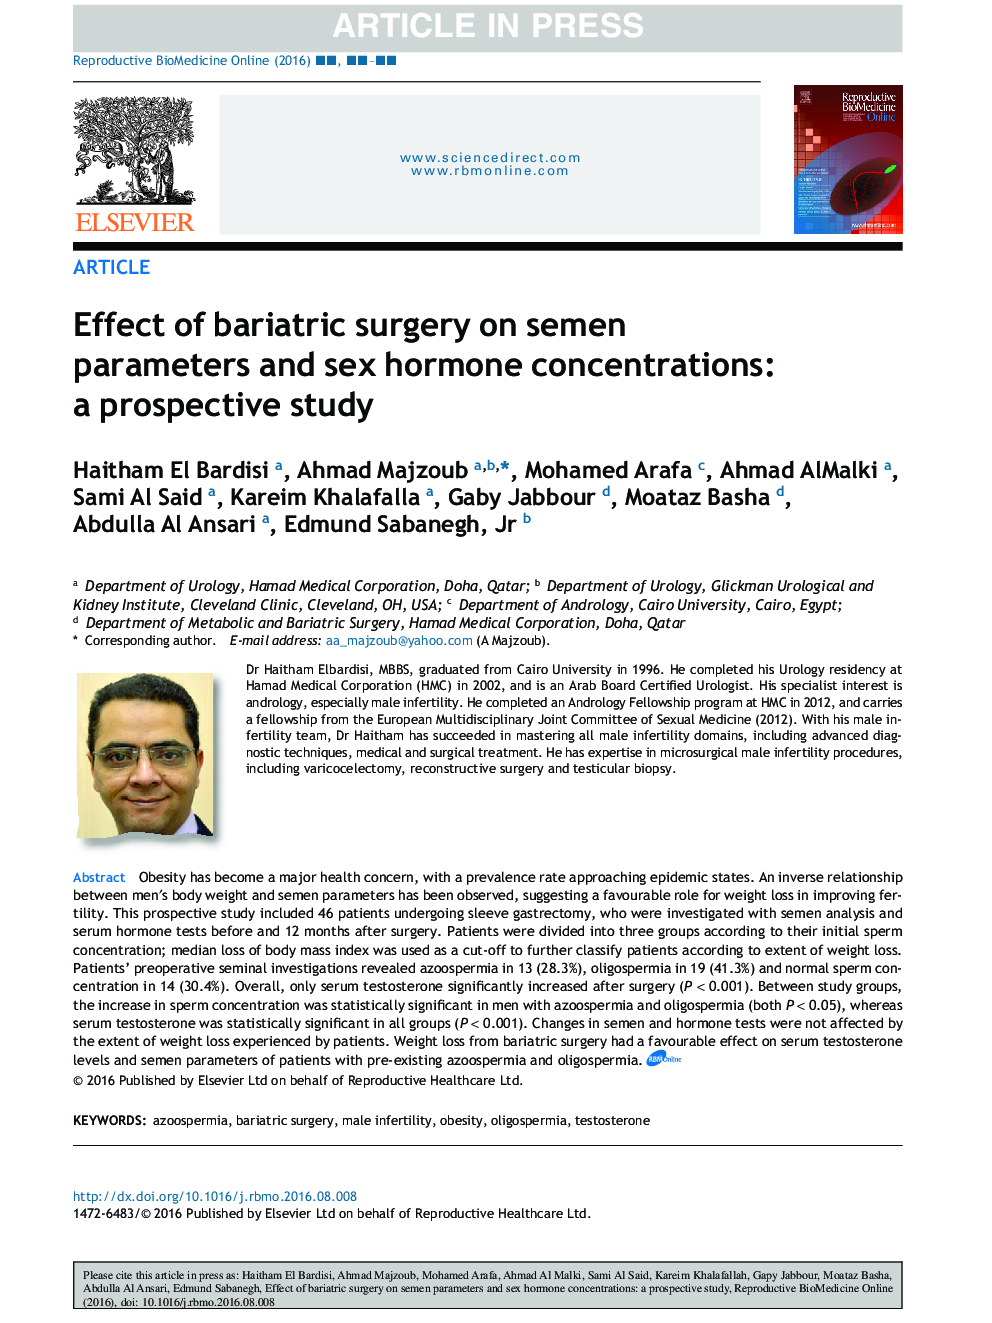 اثر جراحی بریتریک بر پارامترهای اسپرم و غلظت هورمون جنسی: یک مطالعه آینده نگر 